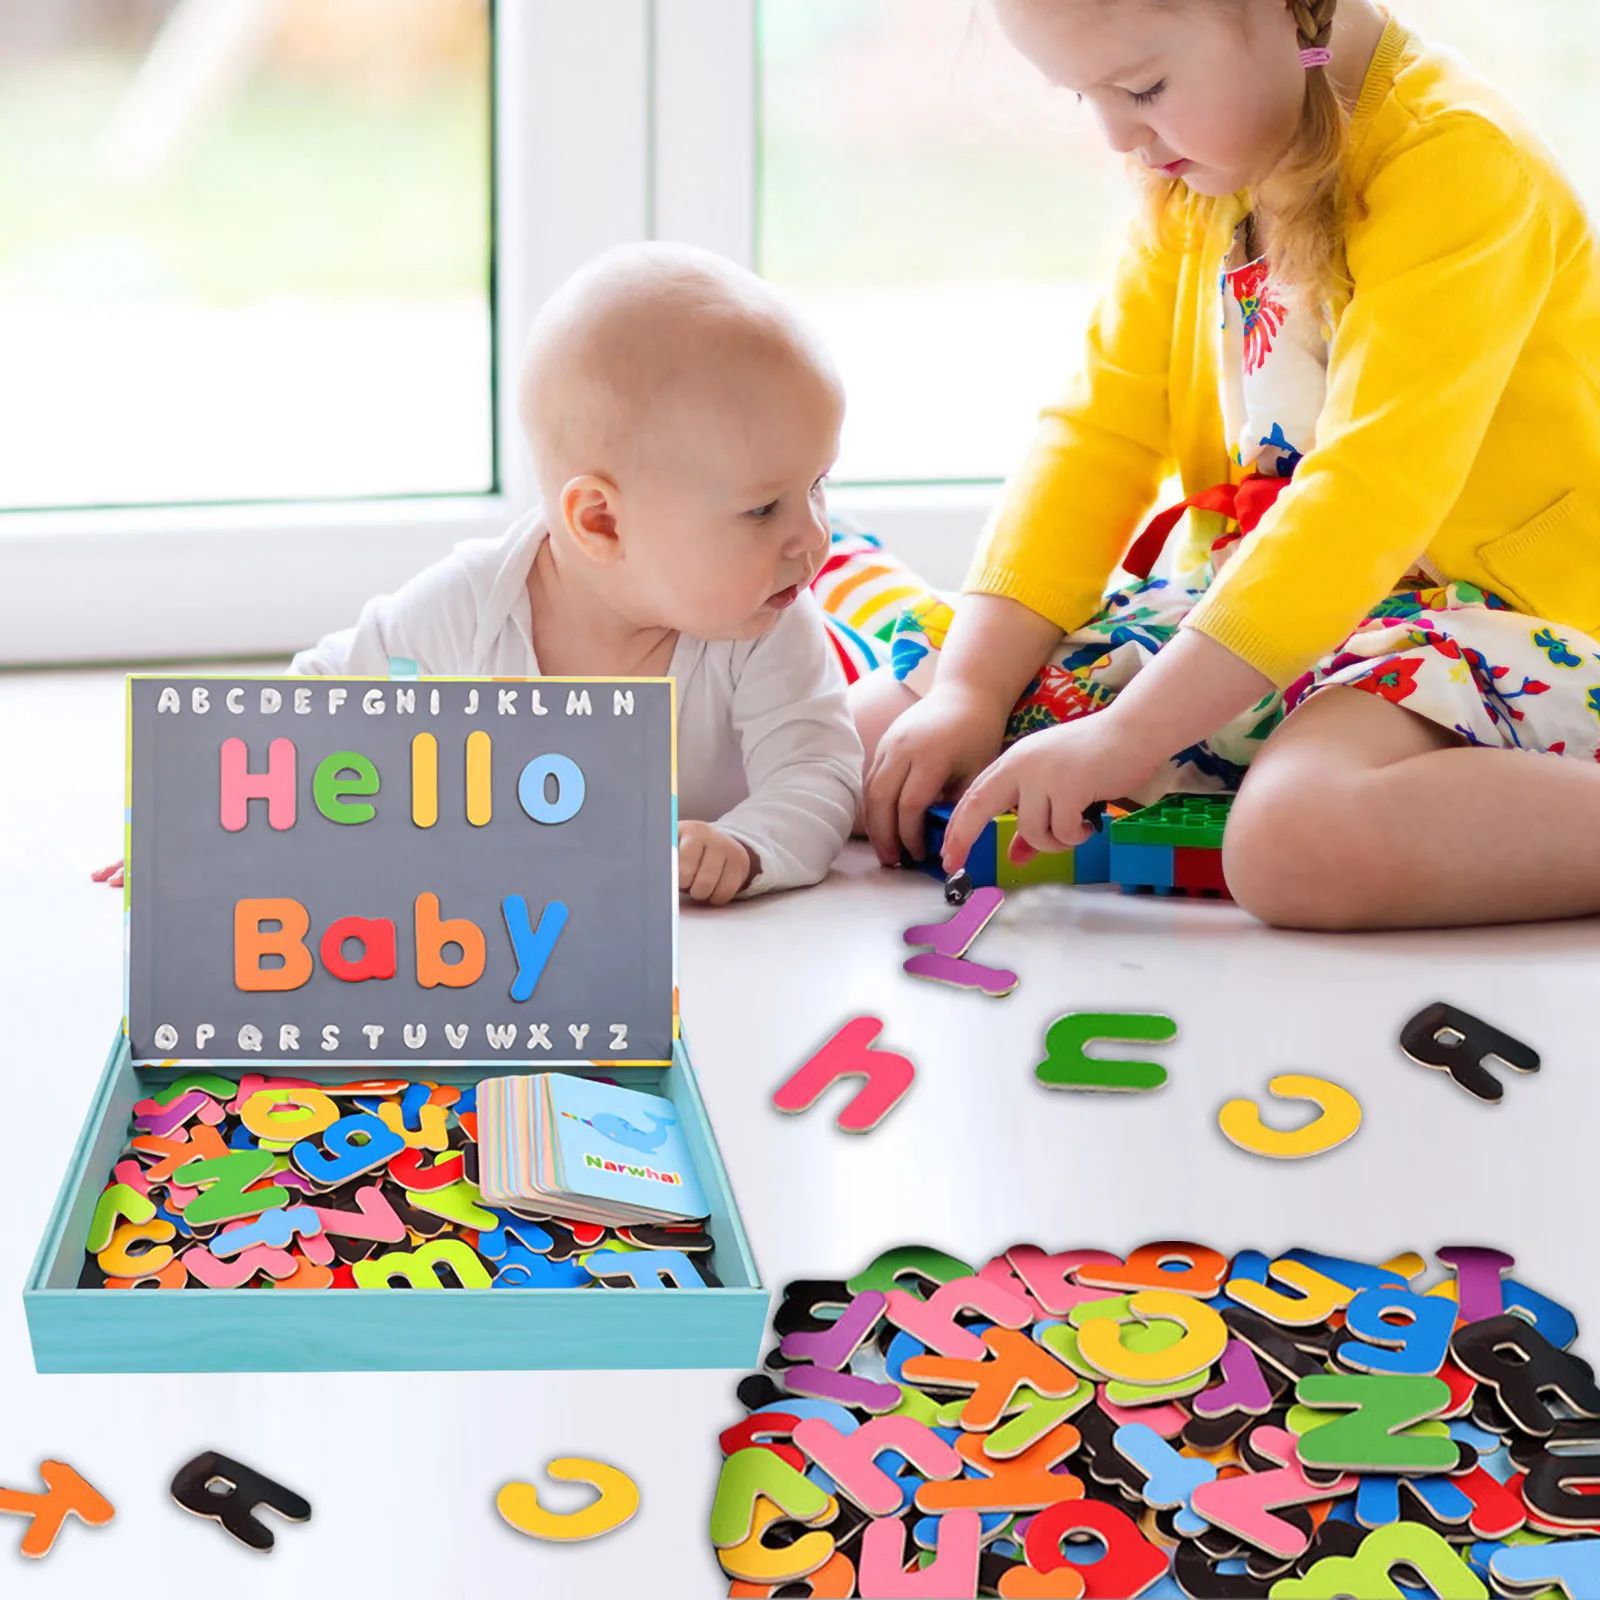 

Набор с буквами и цифрами для детей, забавные развивающие игрушки, магниты на холодильник с сухой стираемой дошкольной игрушкой, подарок дл...